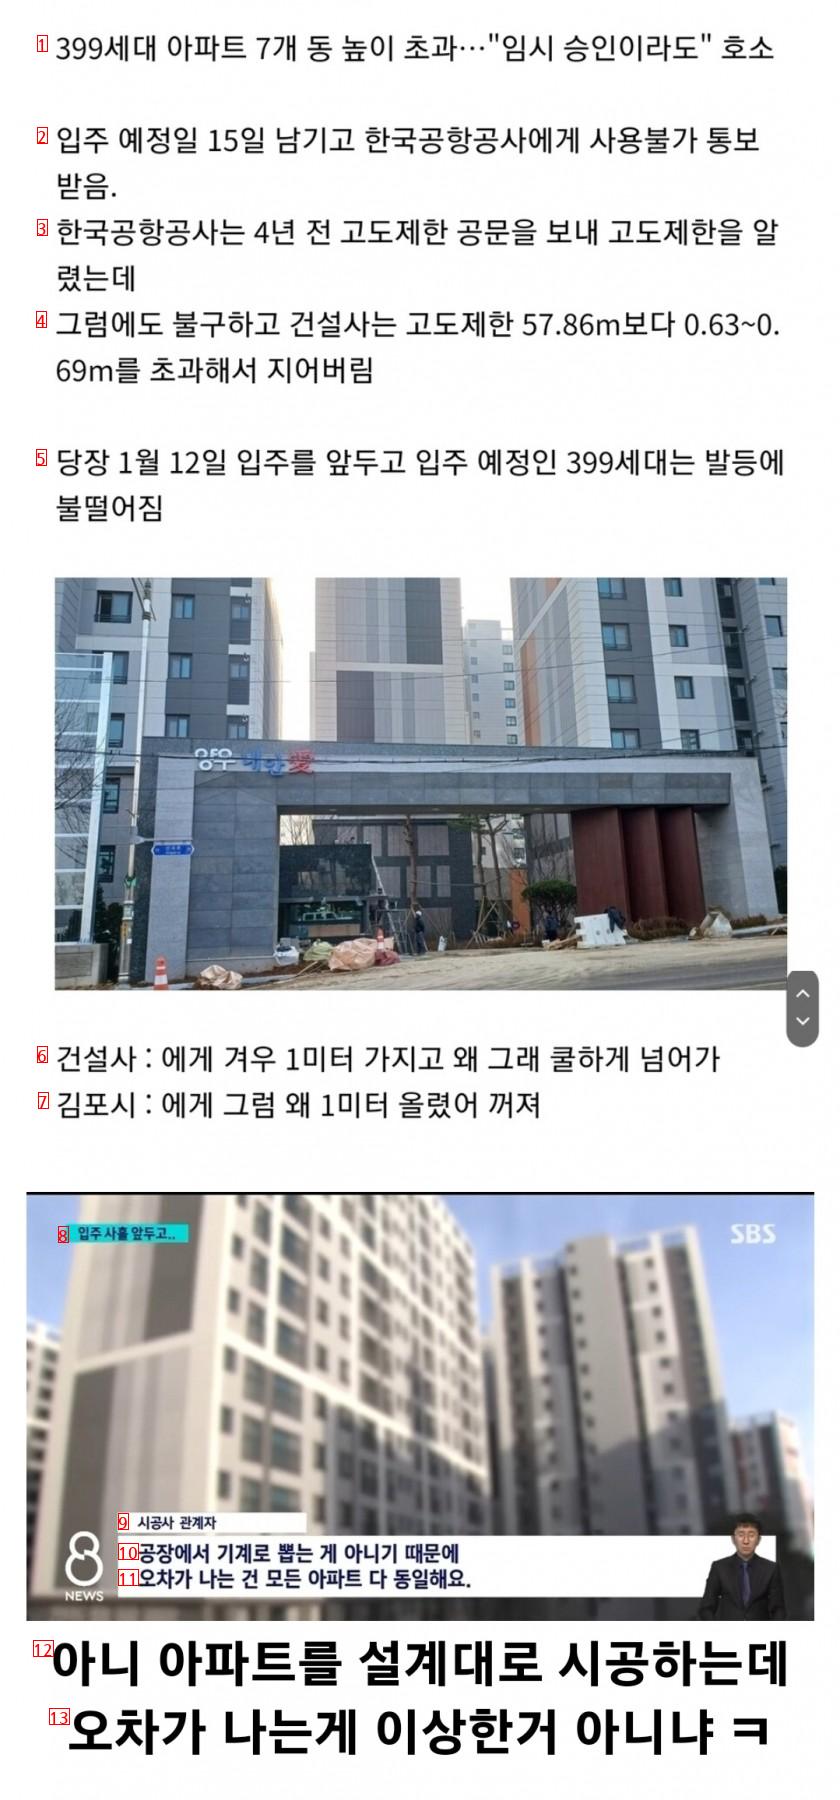 김포공항 고도제한 위반한 시공사의 뻔뻔한 근황